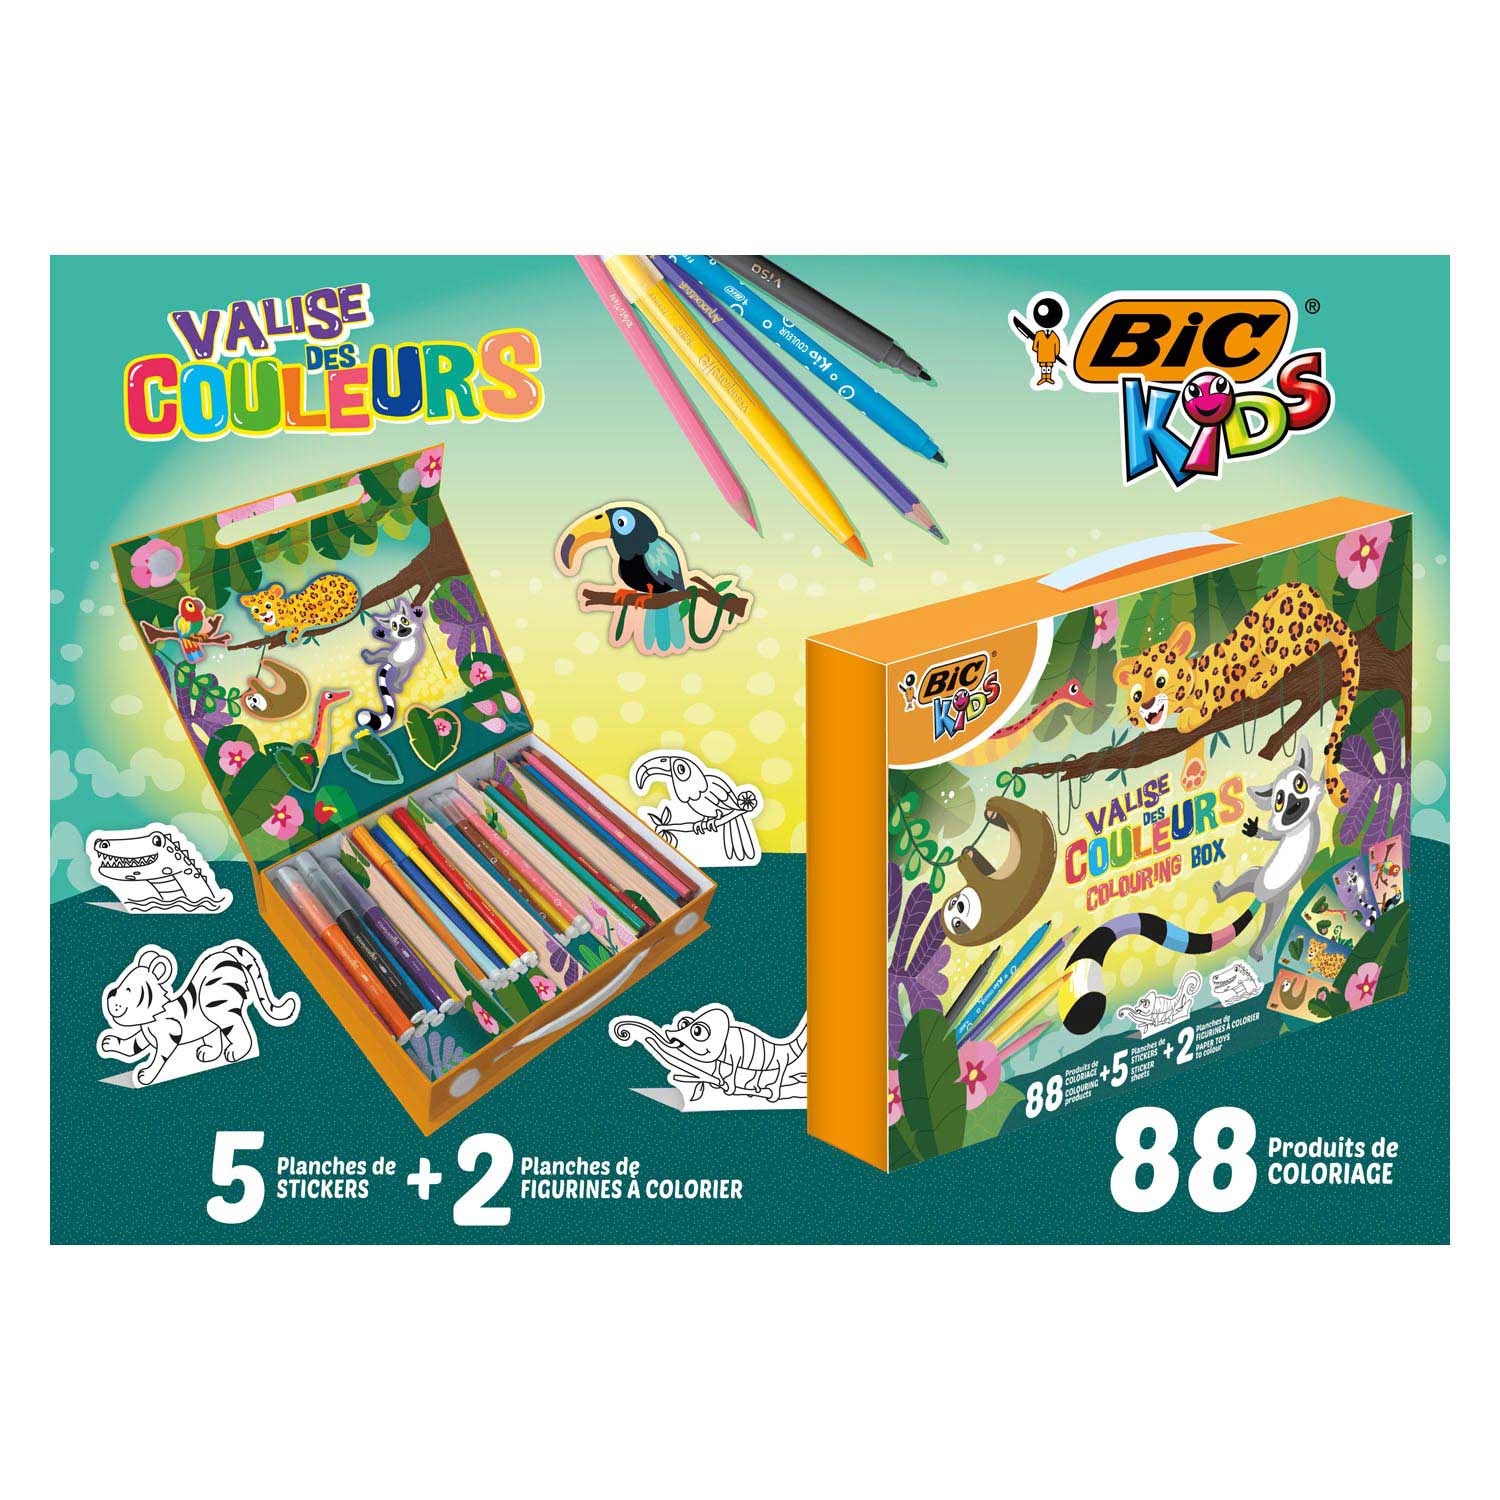  BIC Kids Crayons : Toys & Games